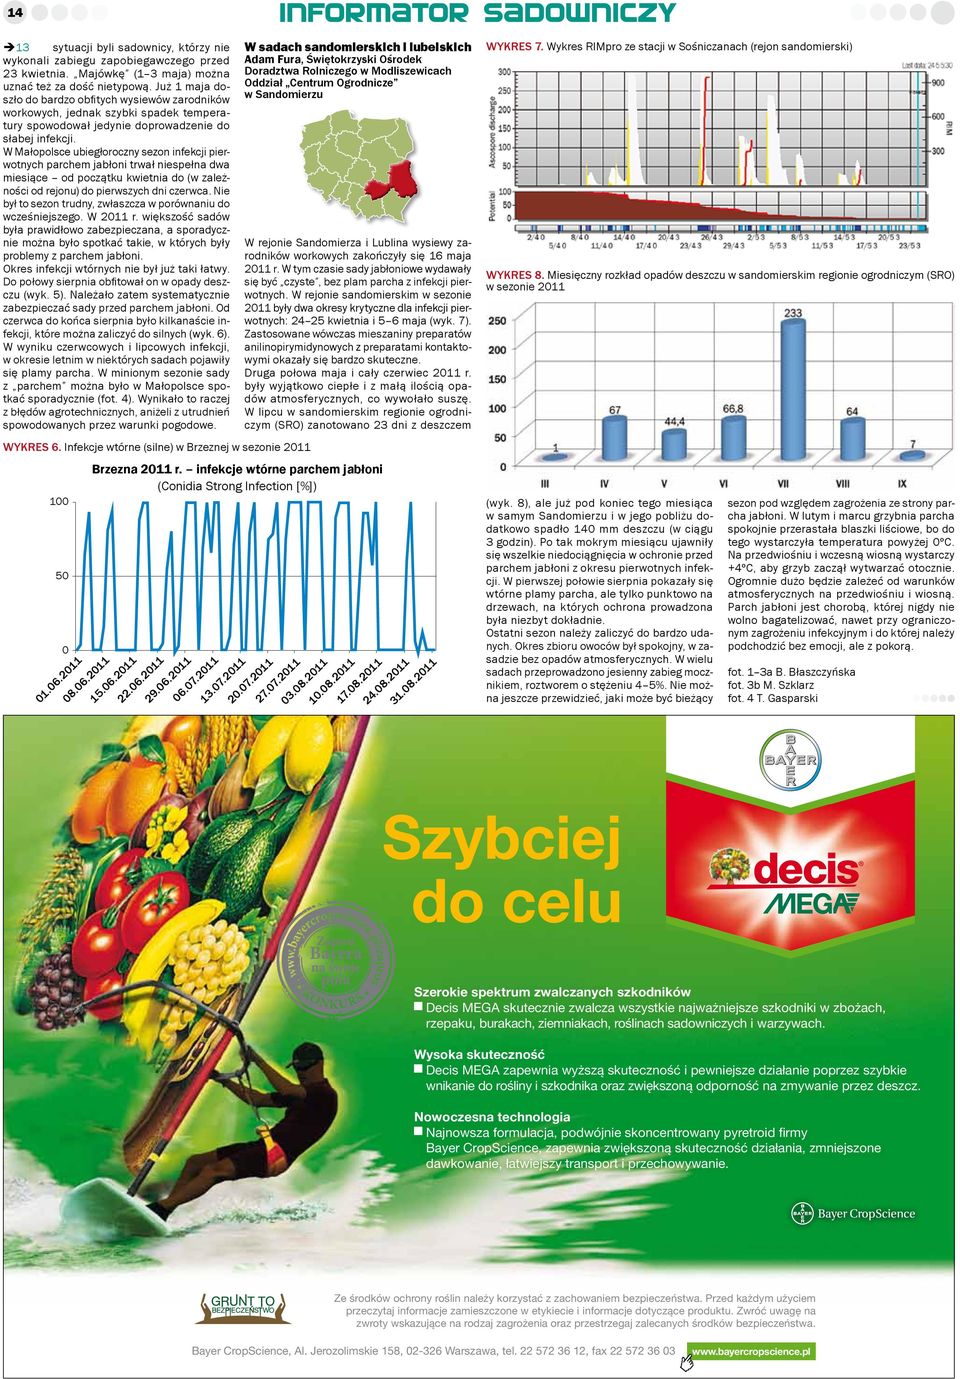 W Małopolsce ubiegłoroczny sezon infekcji pierwotnych parchem jabłoni trwał niespełna dwa miesiące od początku kwietnia do (w zależności od rejonu) do pierwszych dni czerwca.